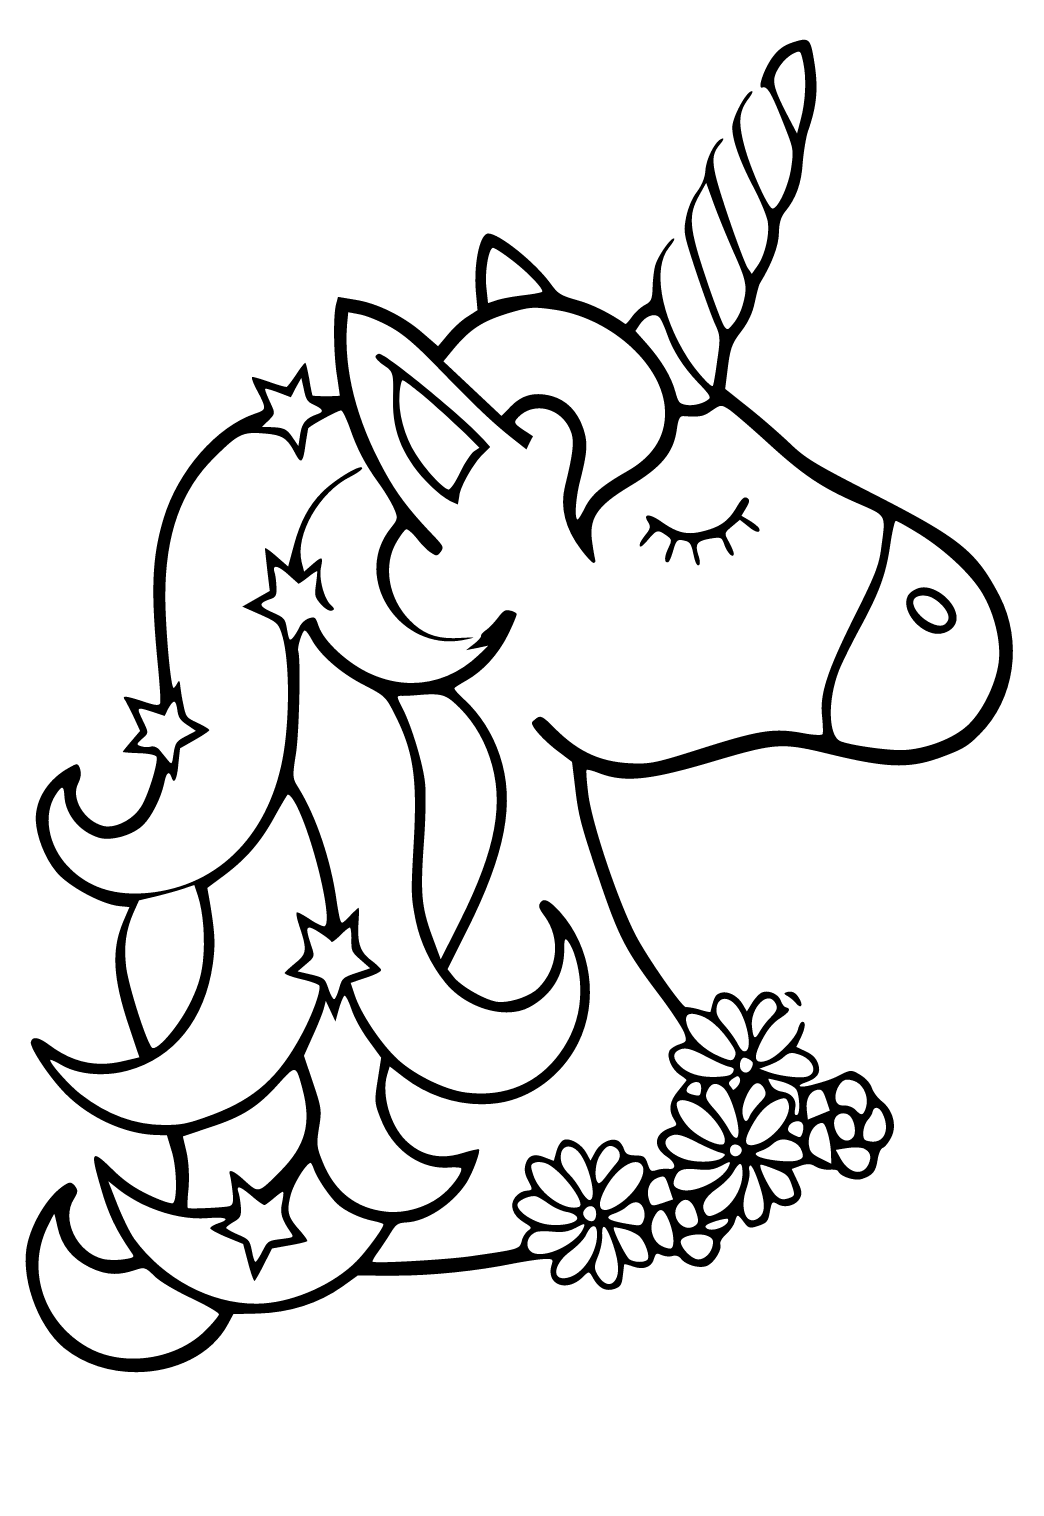 Chấm Để Chấm Unicorn Trang Tô Màu Bị Cô Lập Hình minh họa Sẵn có - Tải